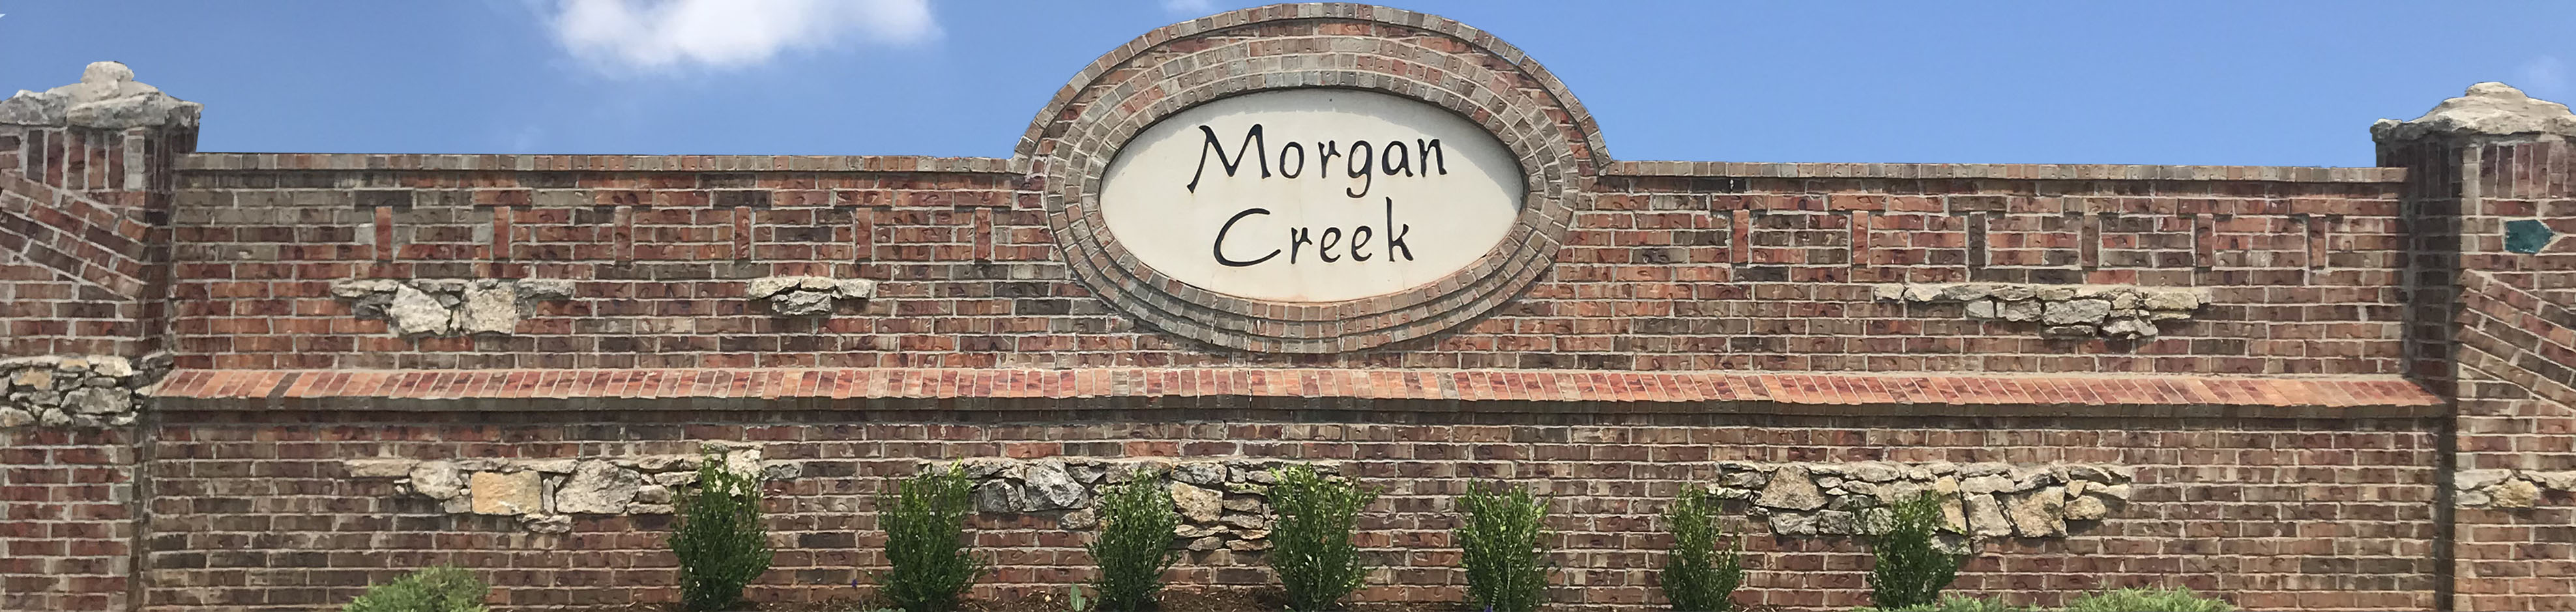 Morgan Creek HOA cover